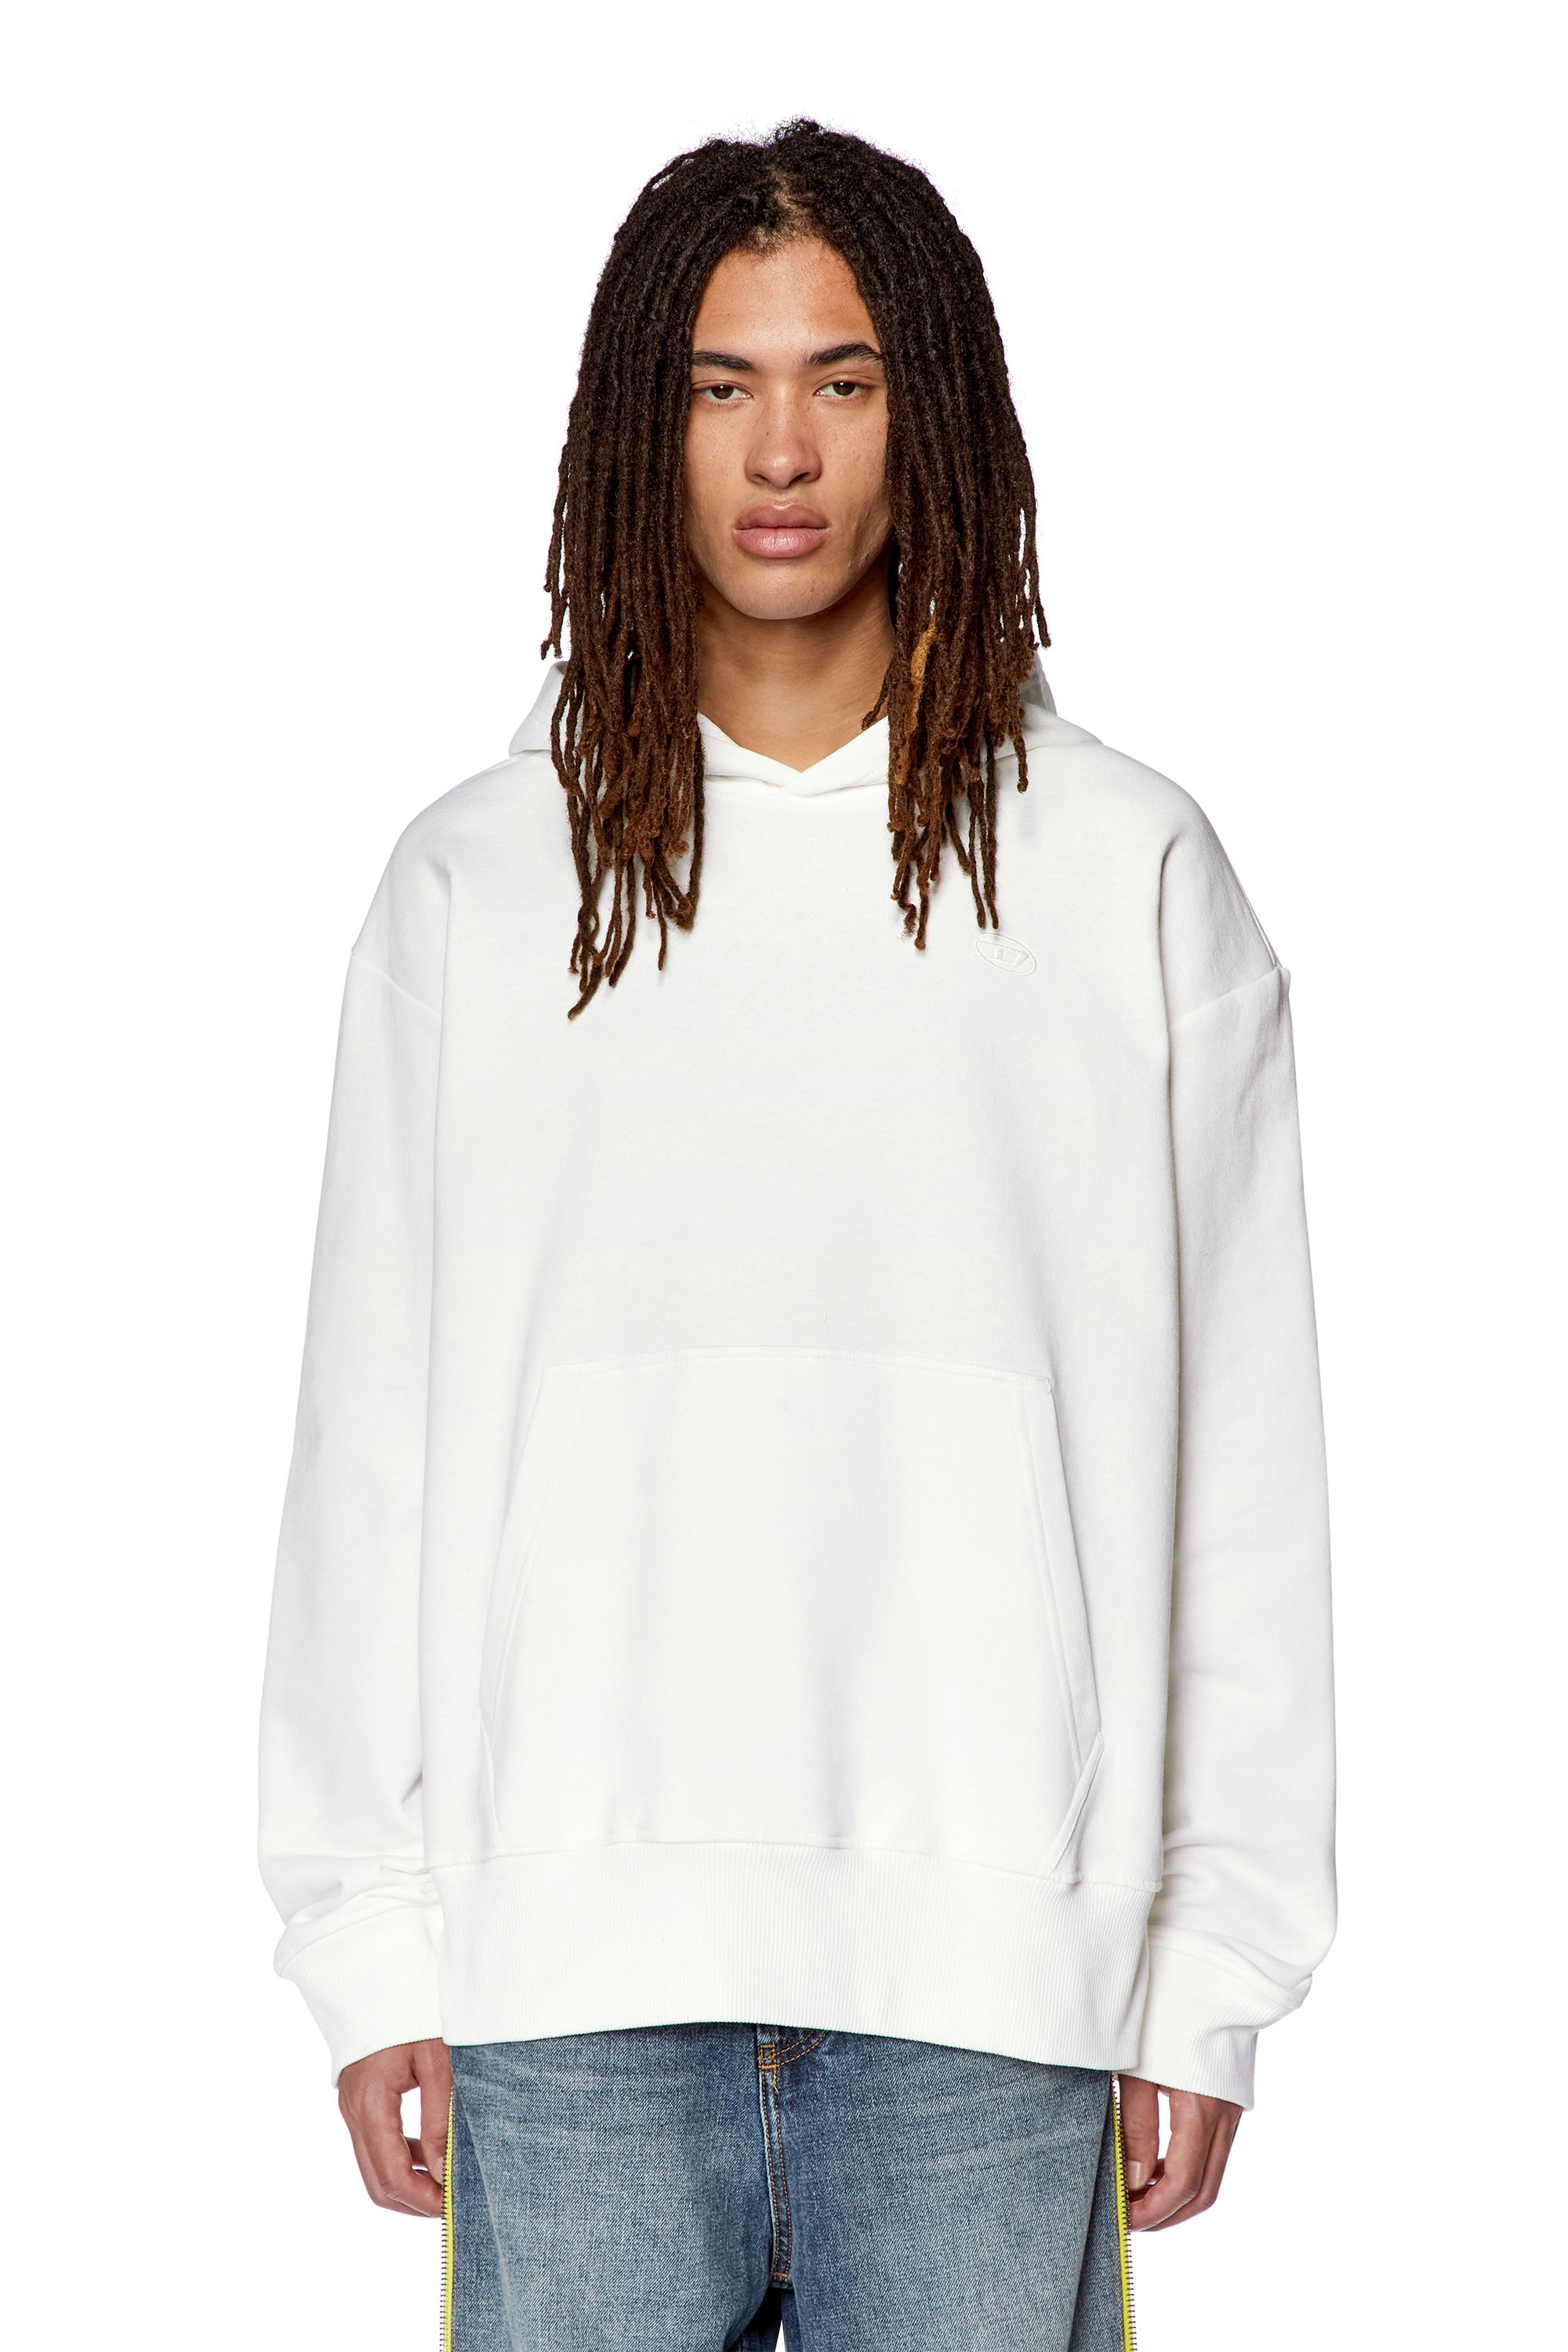 Diesel - Sweat-shirt à capuche avec logo brodé - Pull Cotton - Homme - Blanc